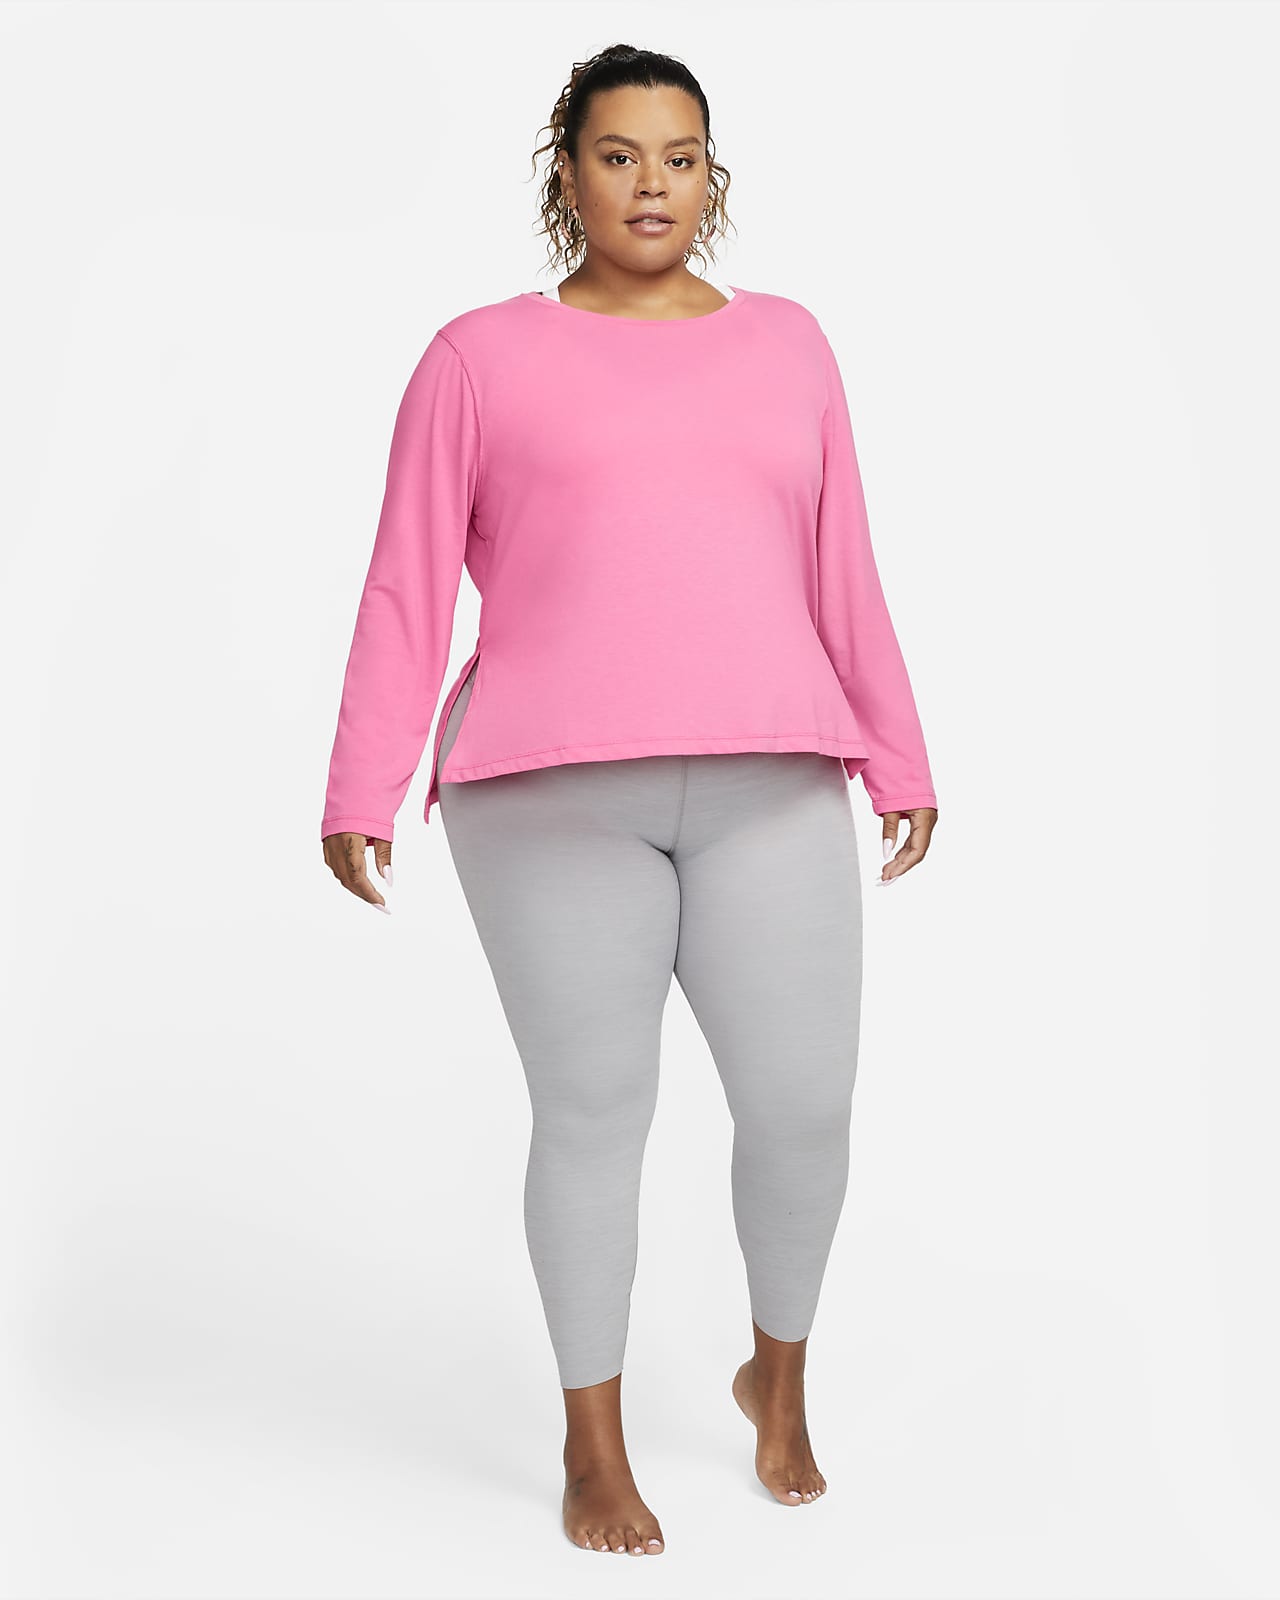 Nike Dri-Fit Yoga Vinyasa Long Sleeve Top Women's Small - $20